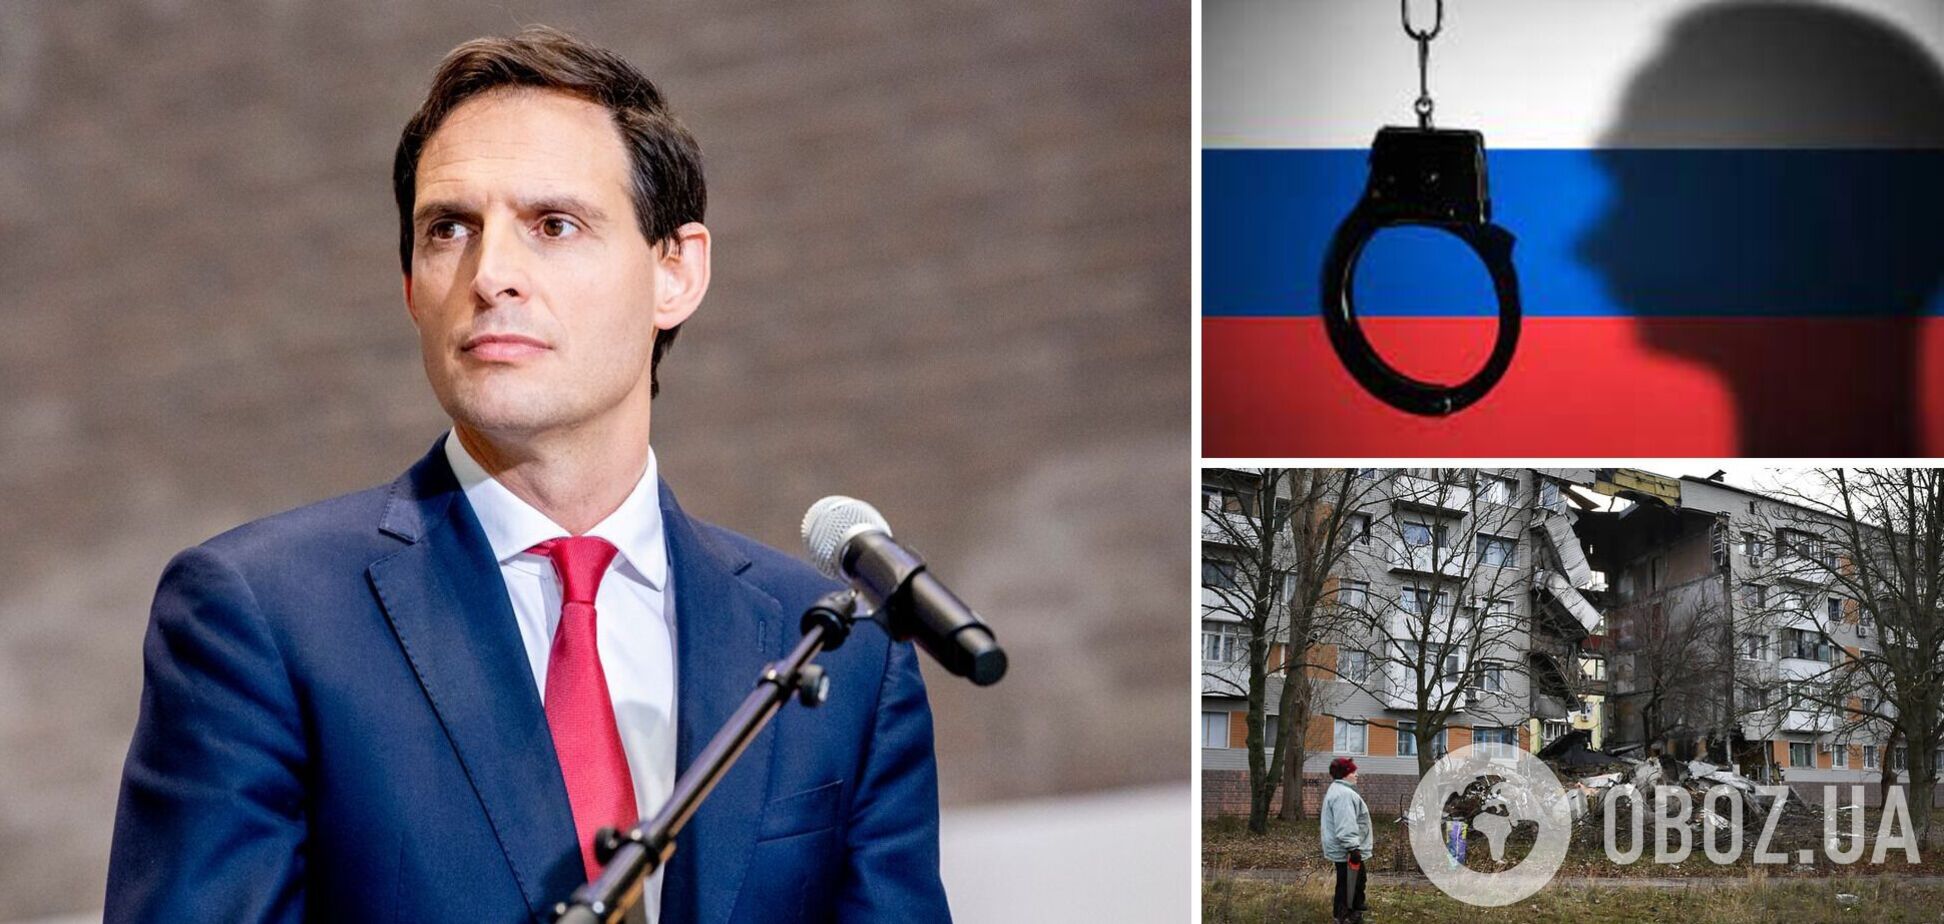 Нідерланди готові створити трибунал у справі про вторгнення Росії в Україну, – глава МЗС